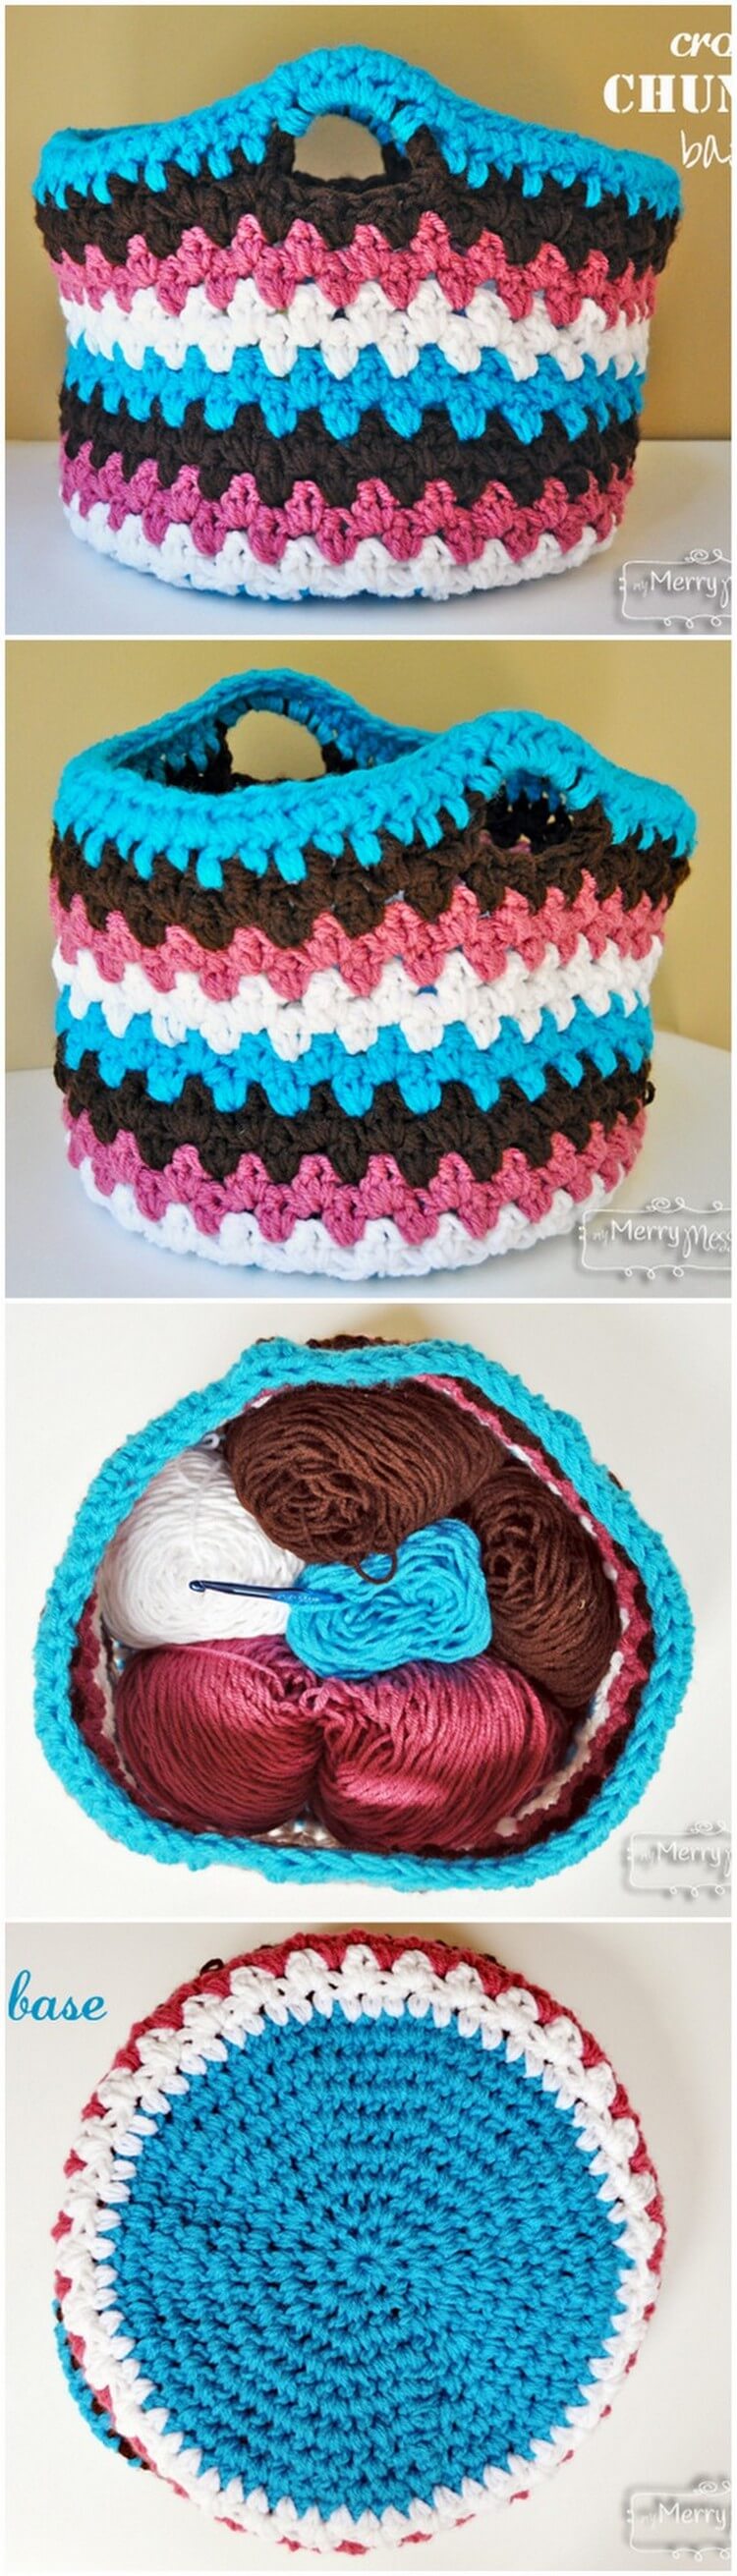 Crochet Basket Pattern (3)